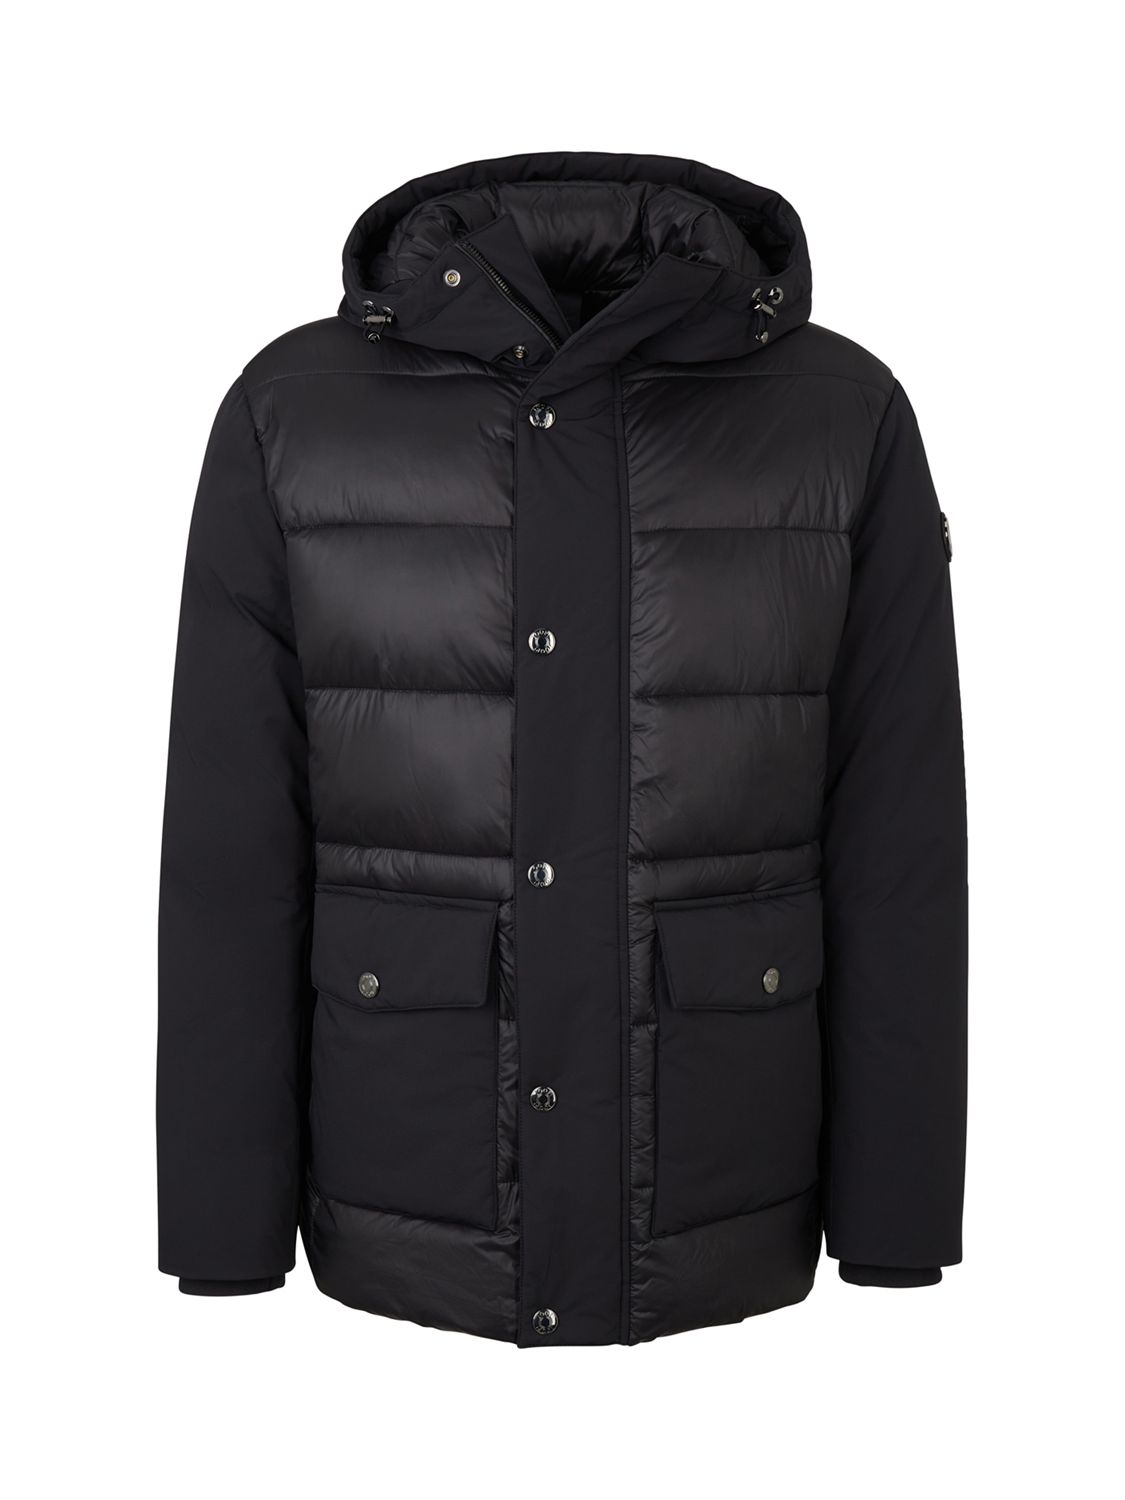 JOOP! Quilted Hooded Winter Jacket, Black at John Lewis & Partners